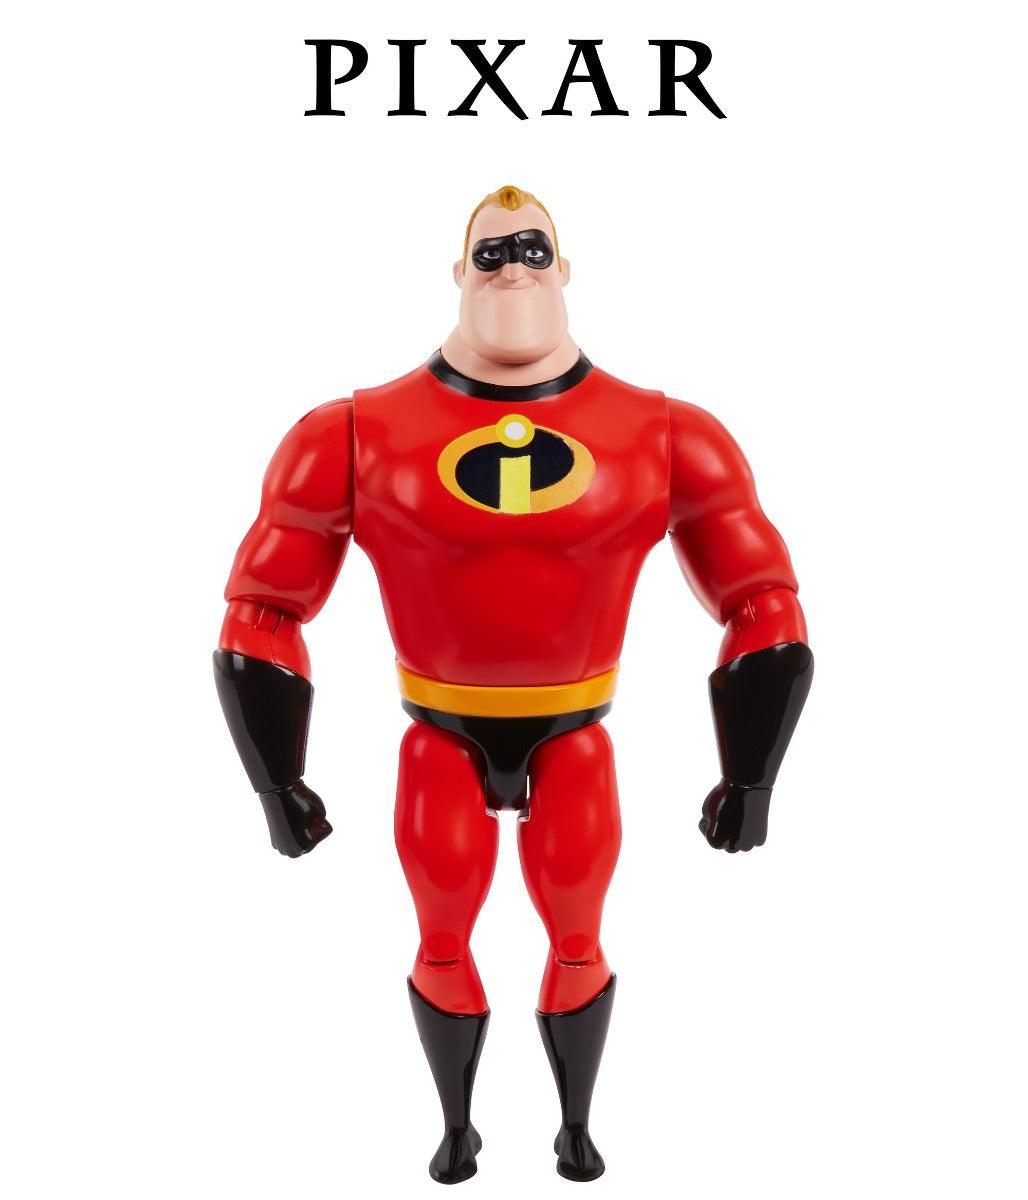 Disney Pixar The Incredibles Mr. Incredible Figure